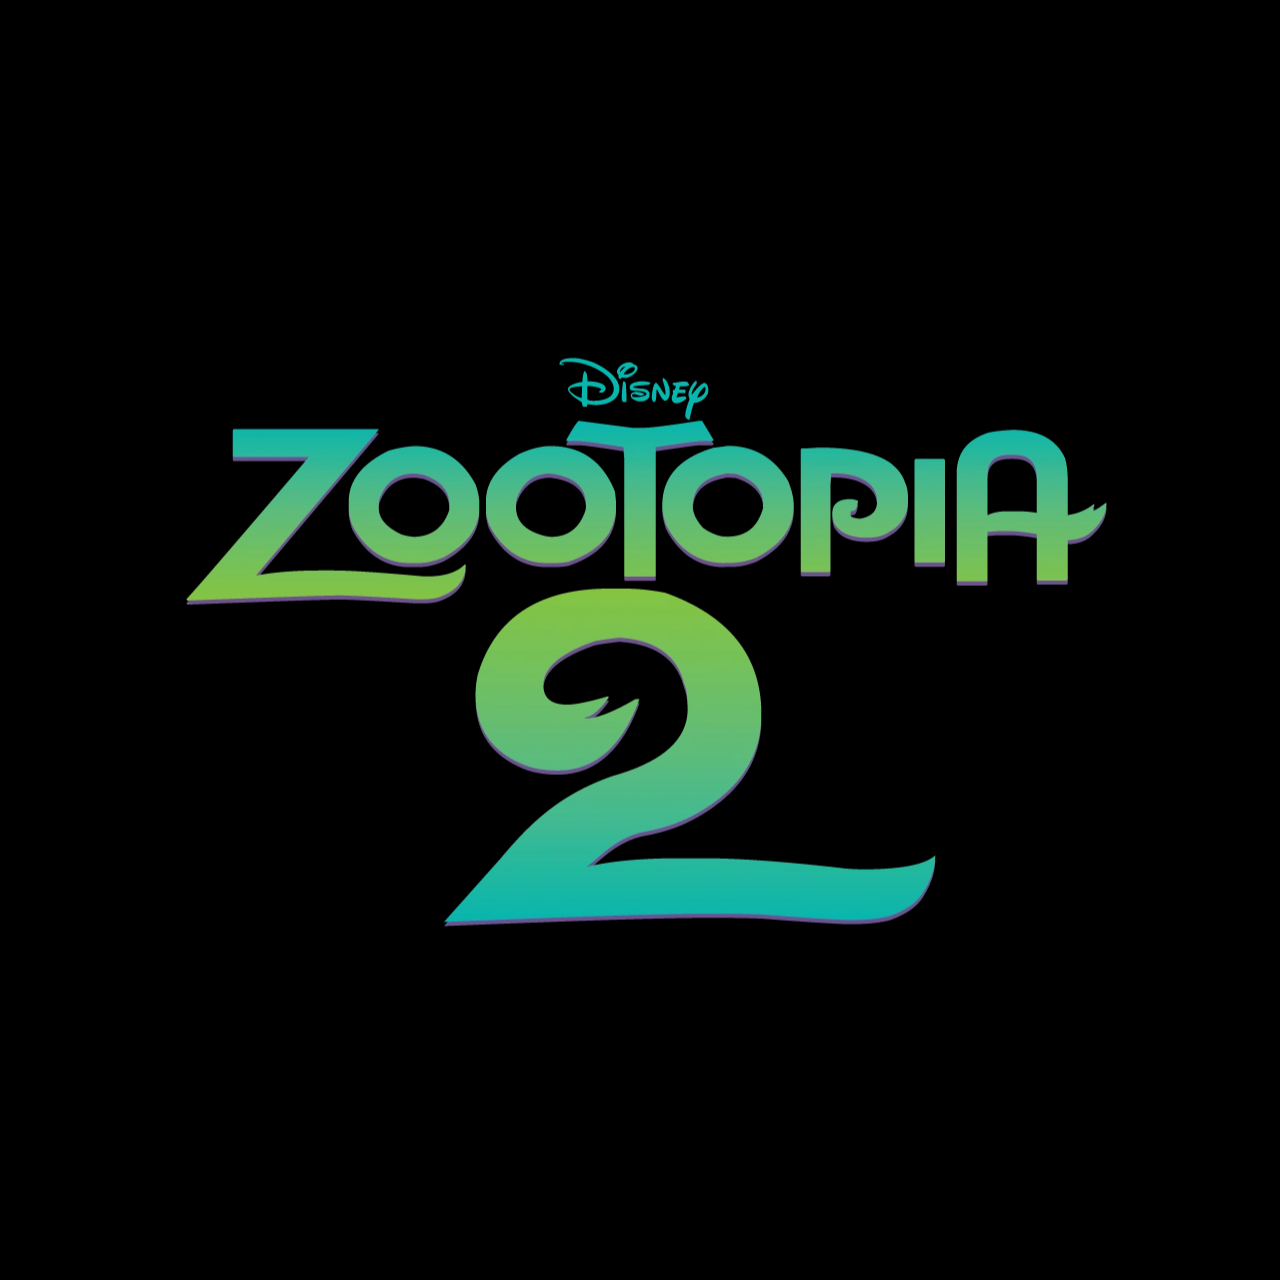 Disney Zootopia 2 (2025) Title Reveal by xXMCUFan2020Xx on DeviantArt